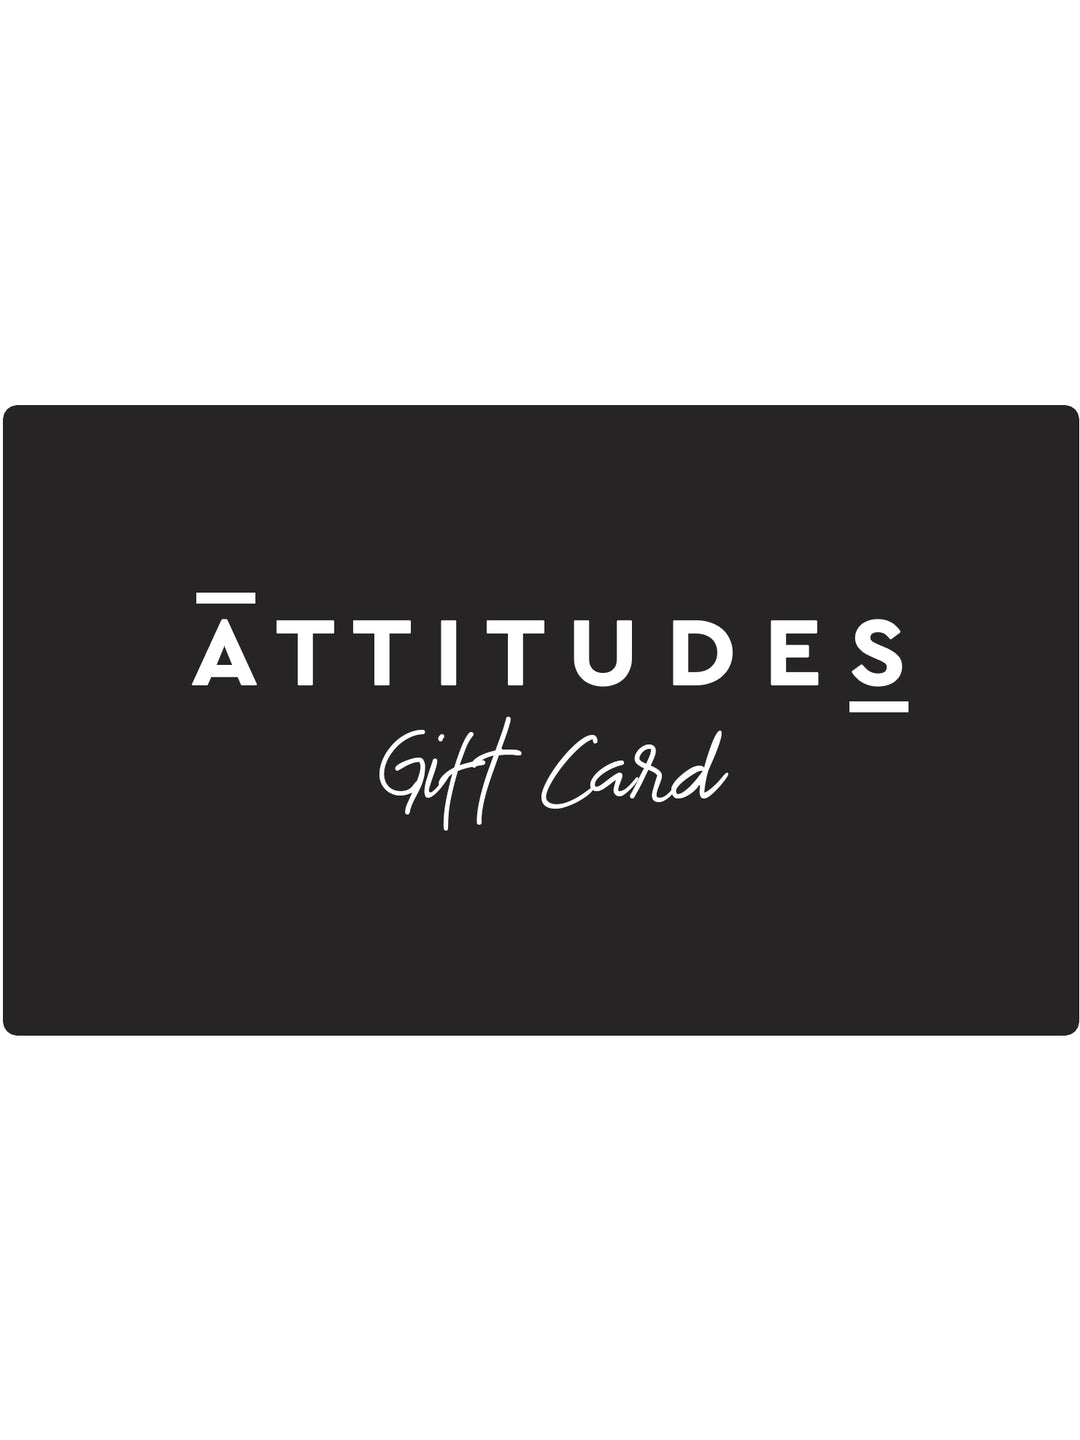 Gift Card - Attitudes Boutique Adelaide